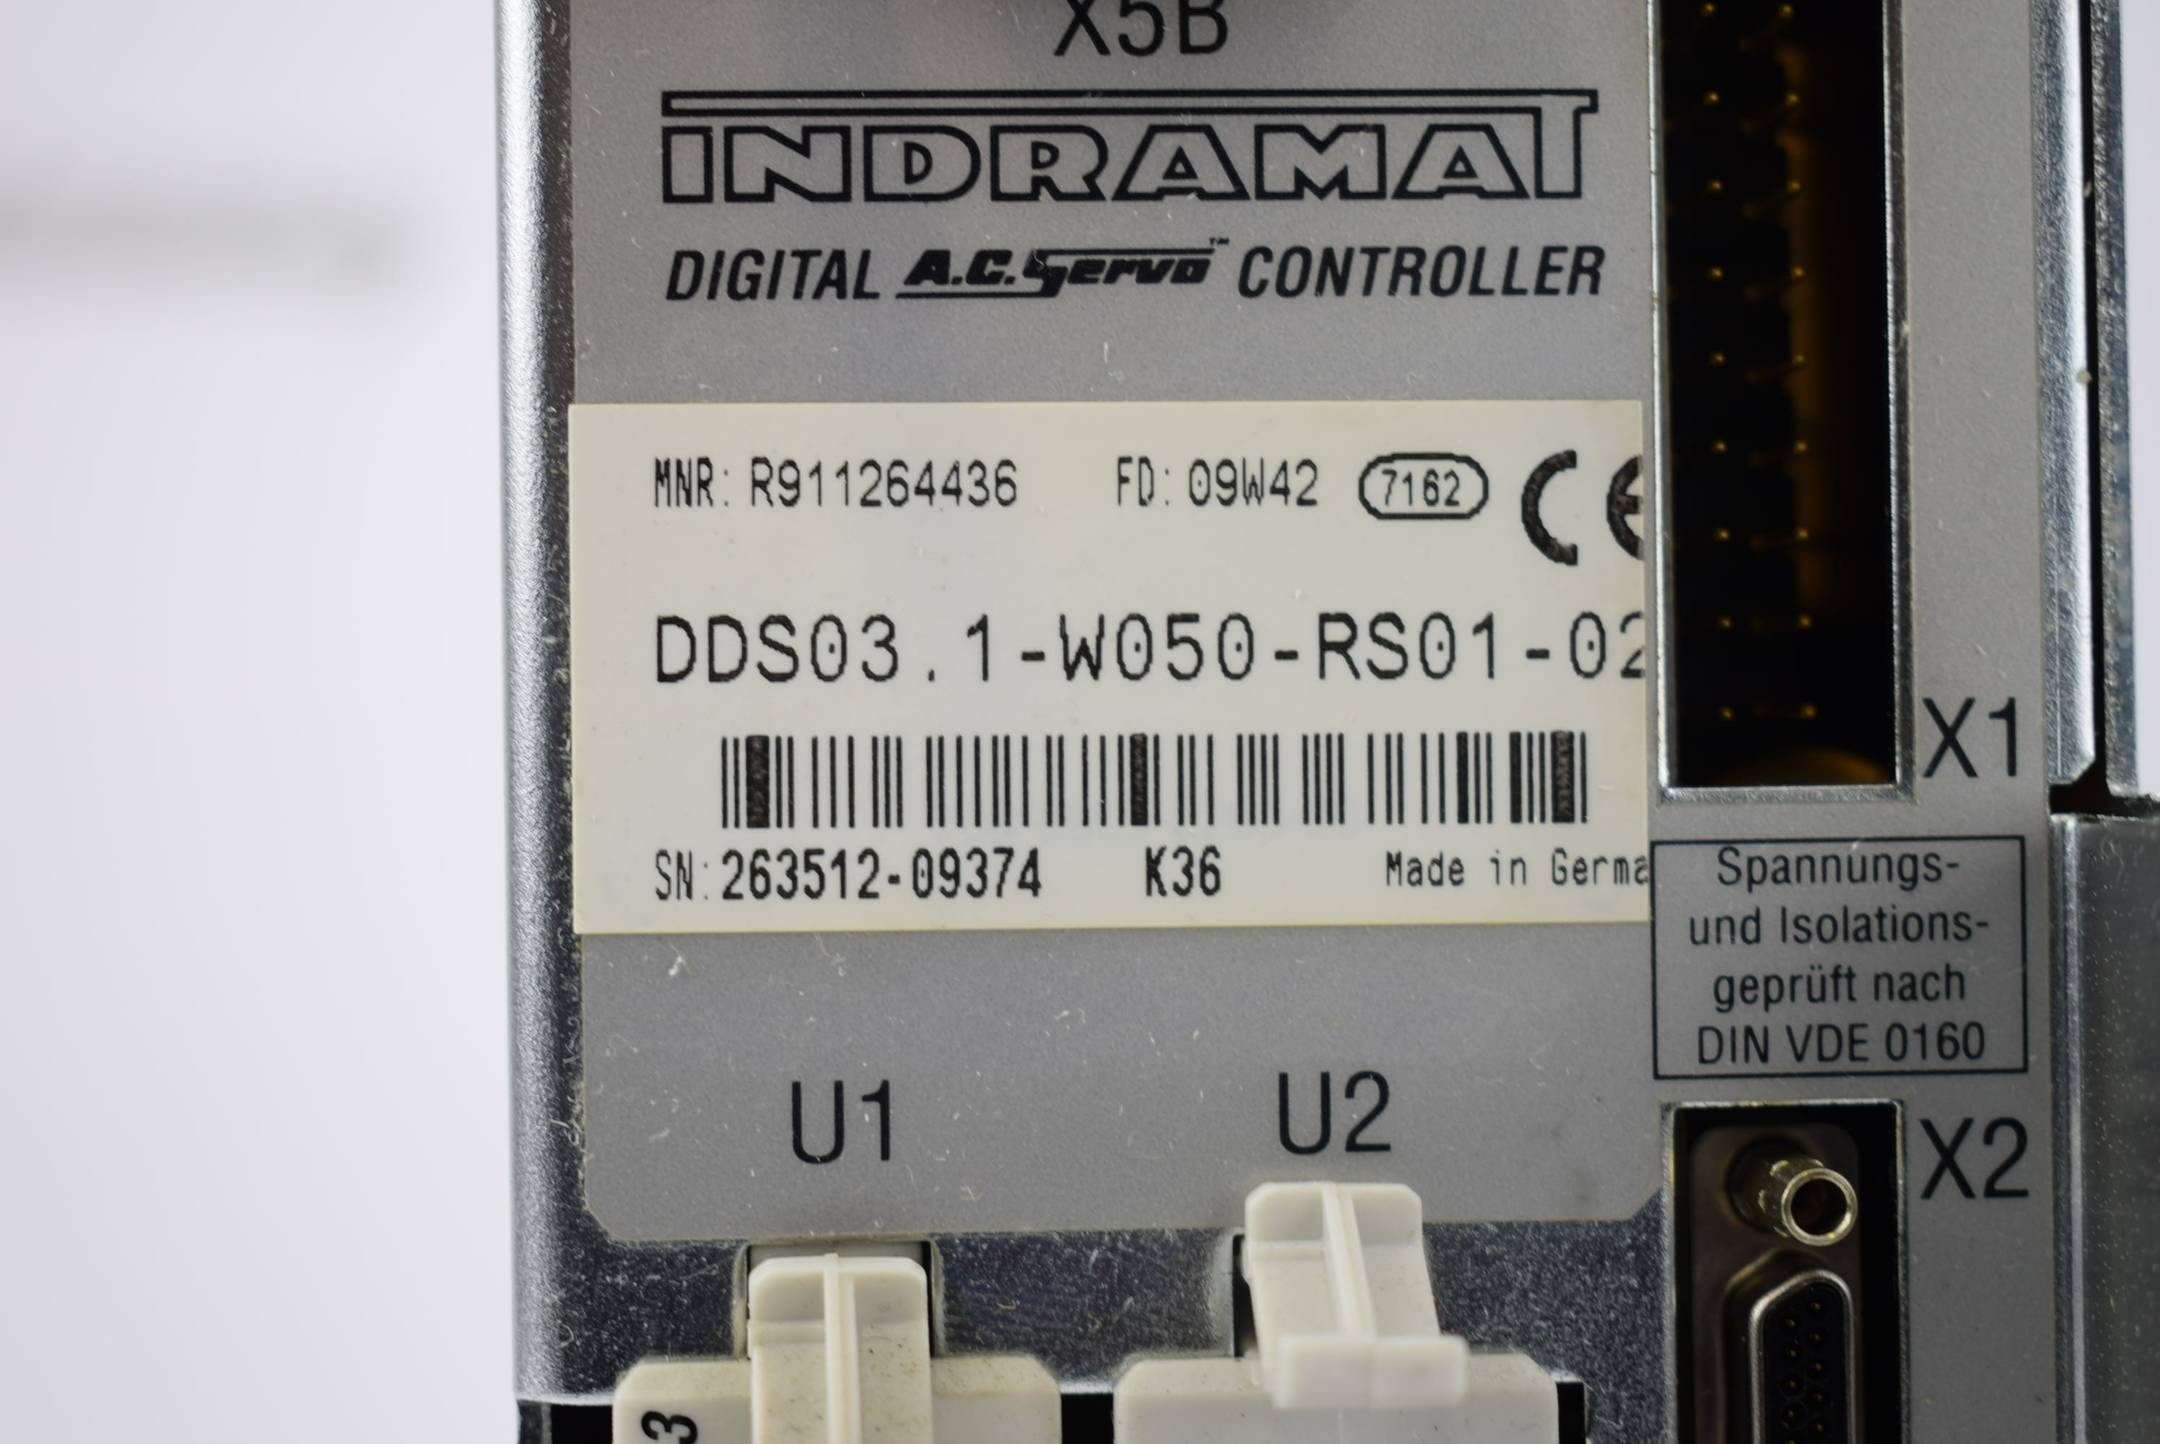 Bosch Rexroth Indramat Digital A.C. Servo controller DDS03.1-W050-RS01-02-FW
